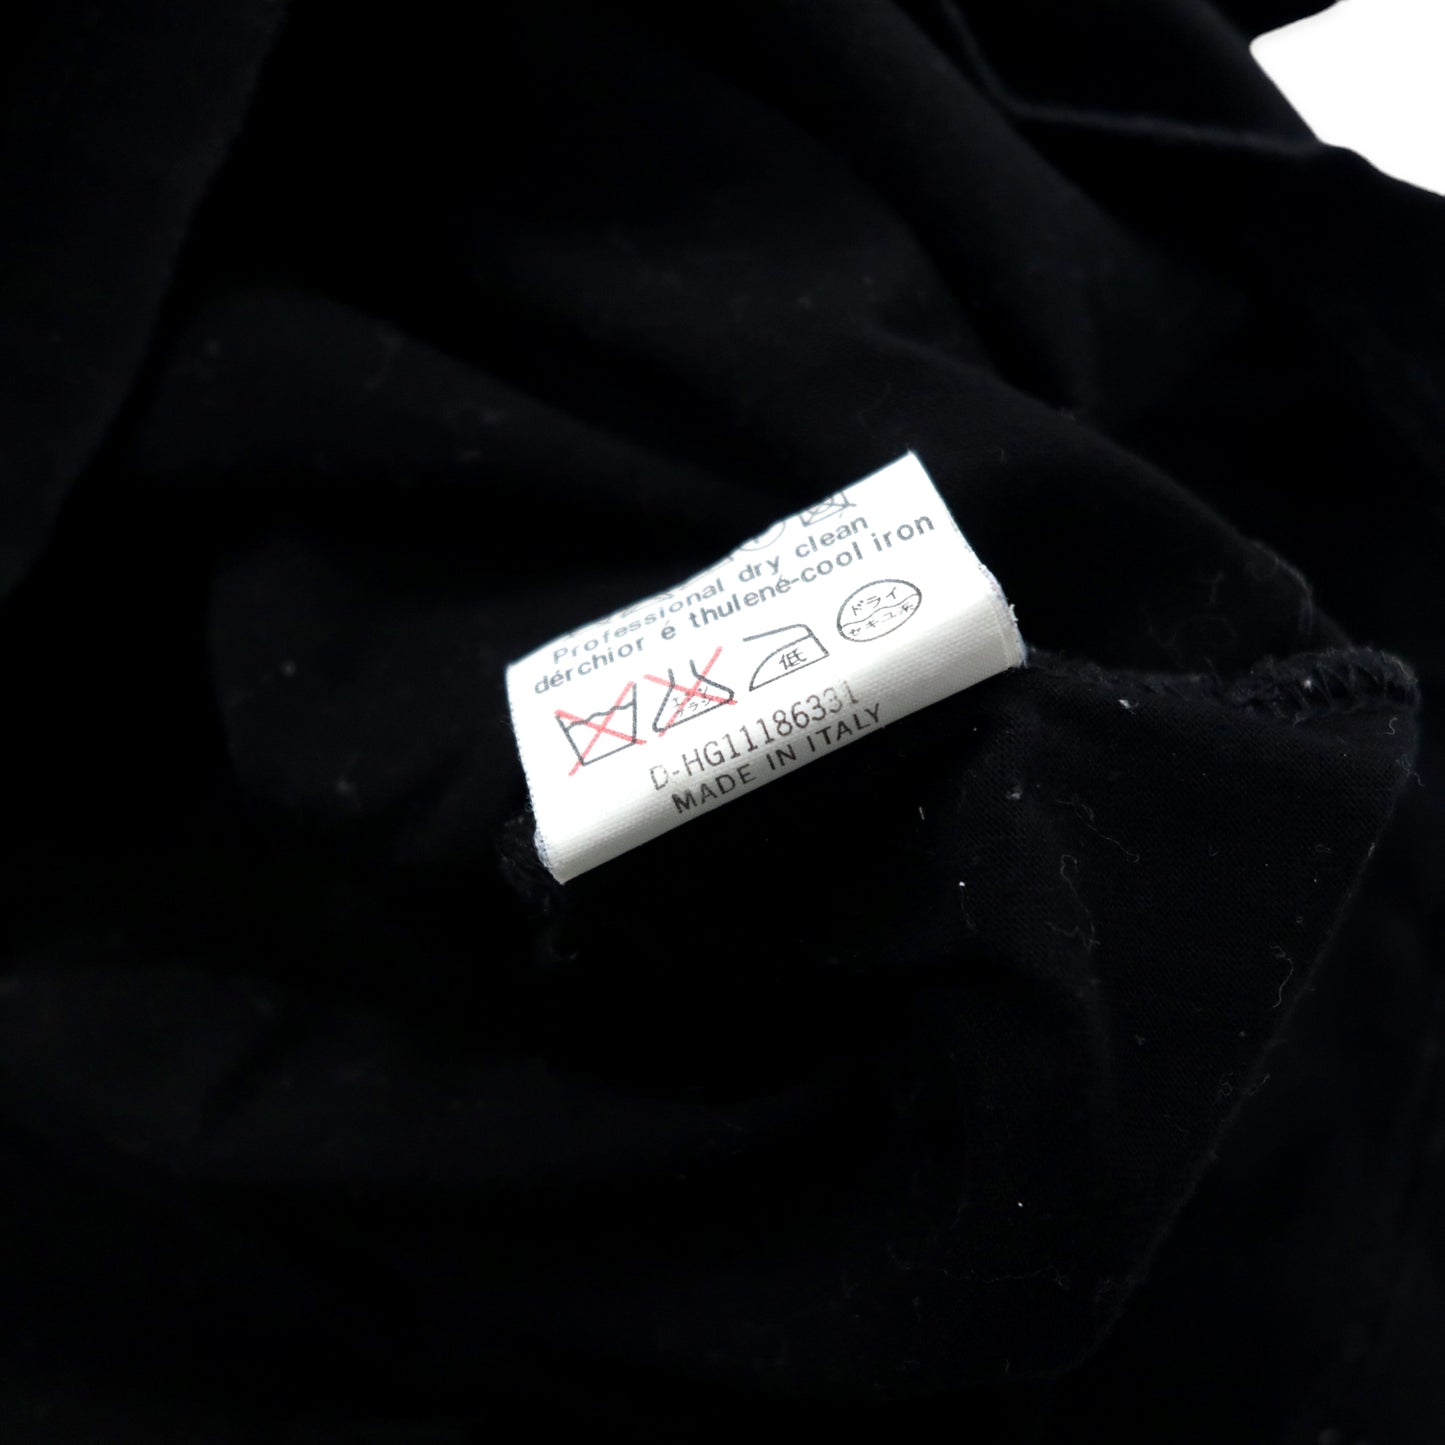 ICEBERG × Disney キャラクター Tシャツ XL ブラック コットン ミッキーマウス イタリア製